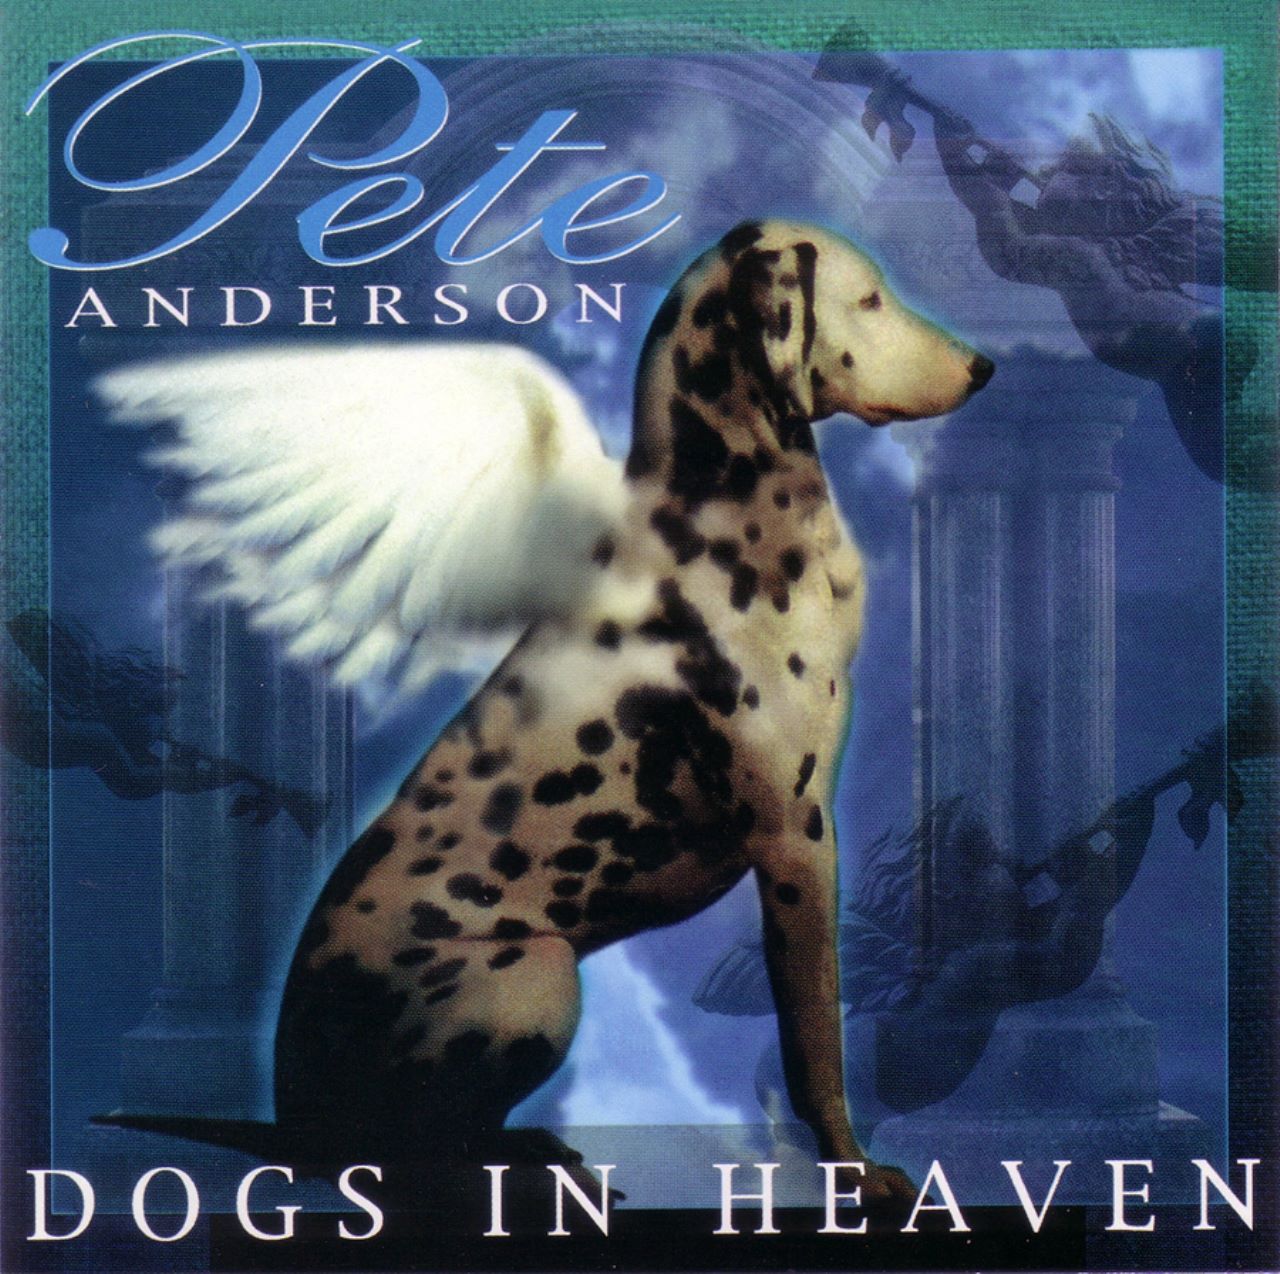 Pete Anderson - Dogs In Heaven cover album